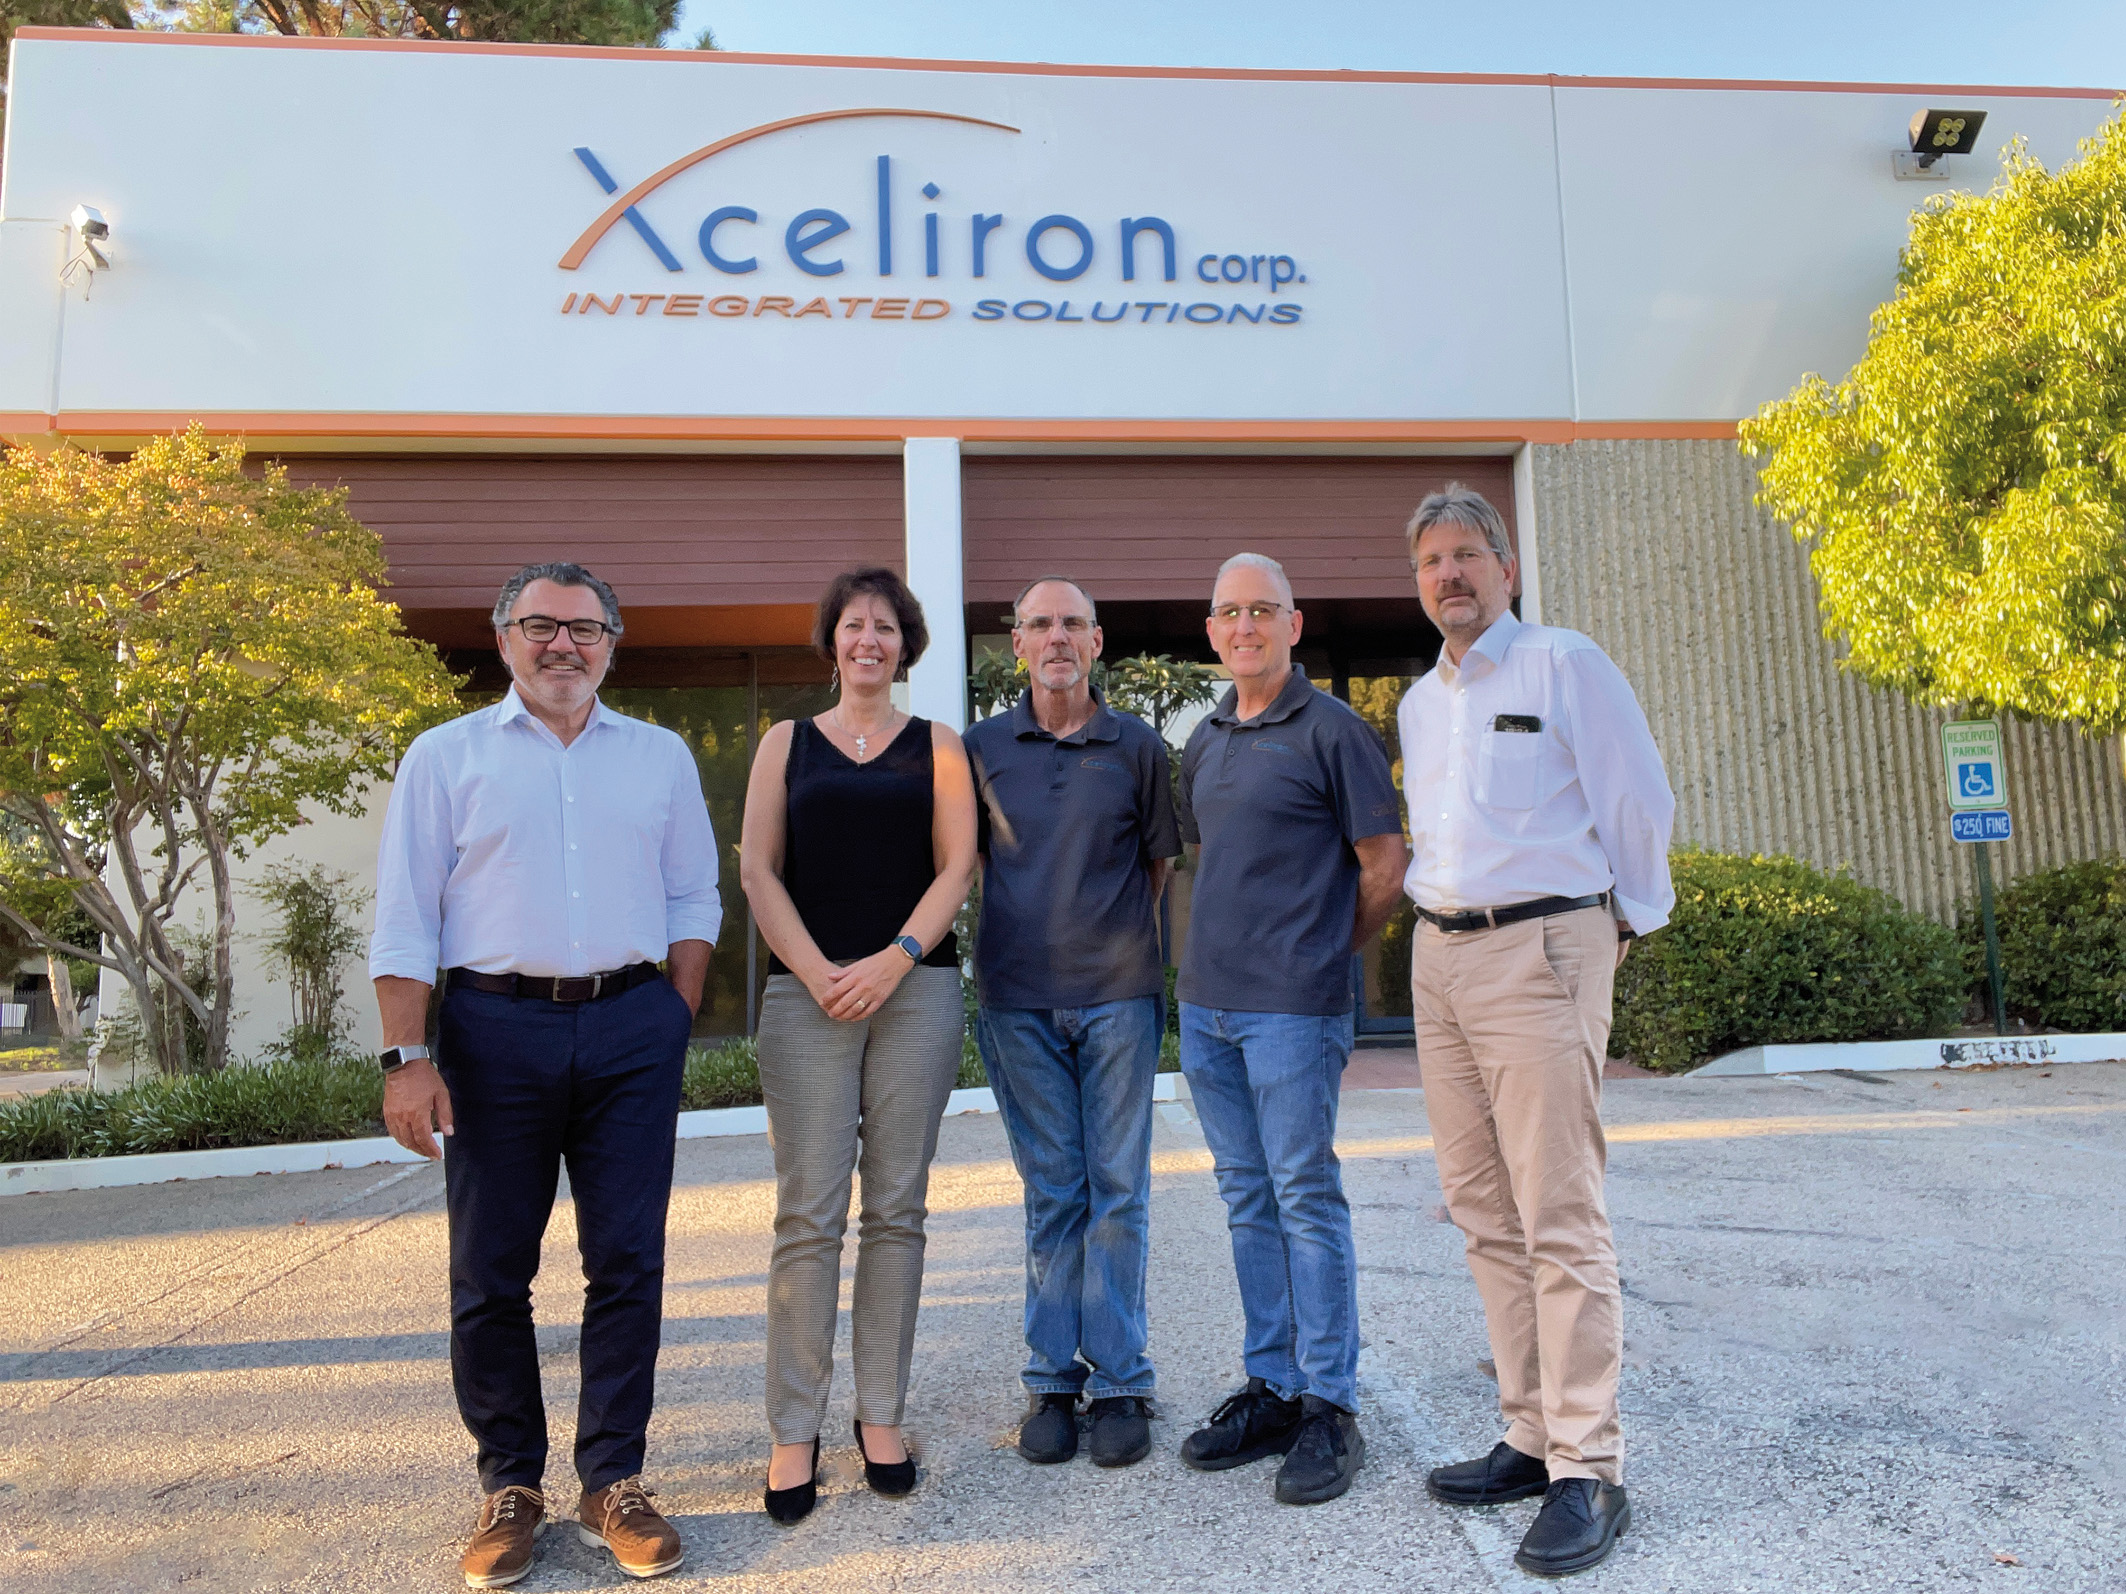 CERATIZIT übernimmt Xceliron Corp.